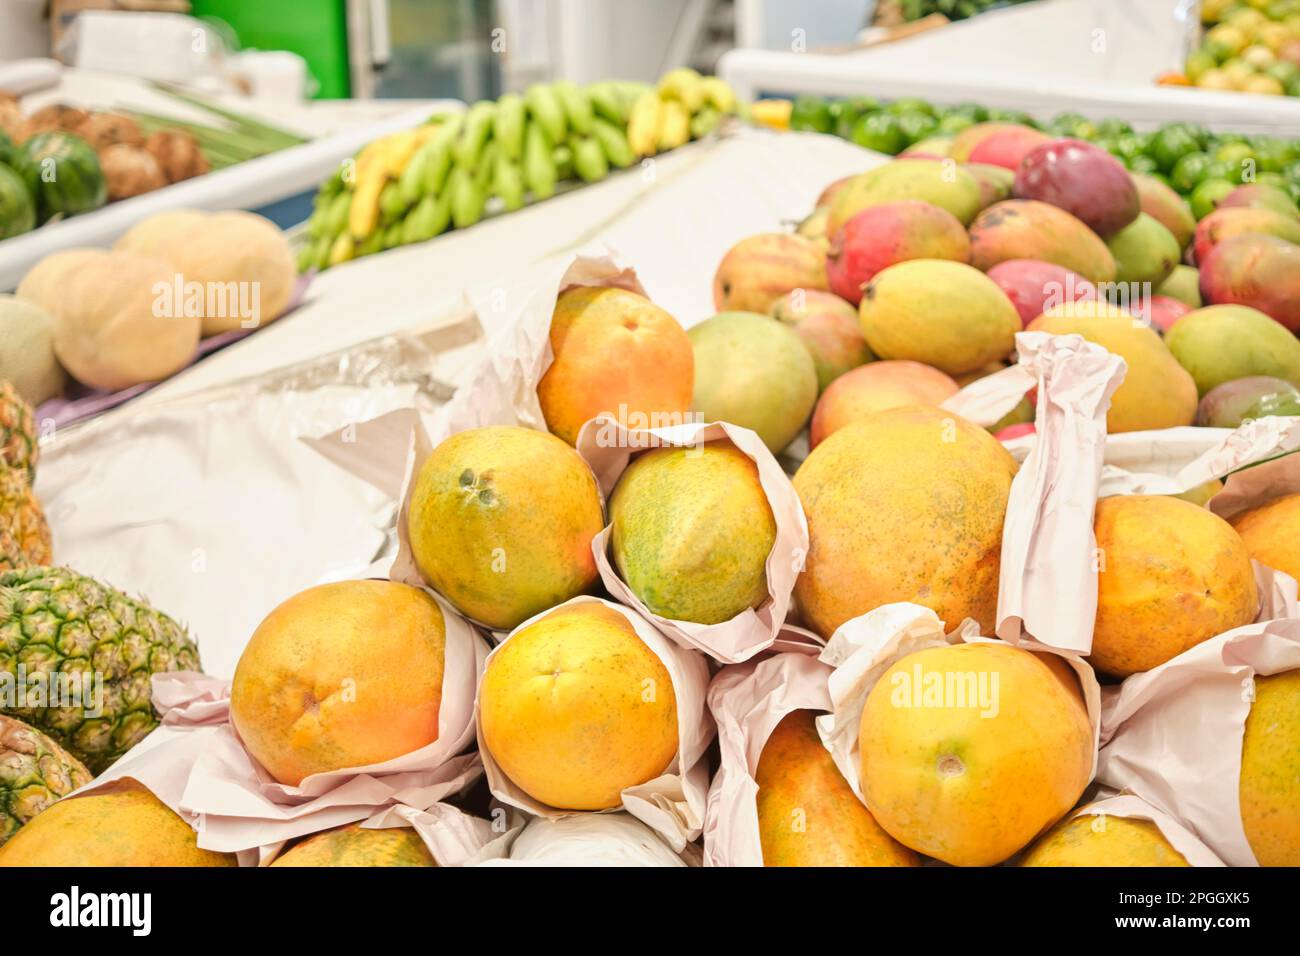 Frutta tropicale in vendita presso un mercato di ortaggi: Papaya, manghi, ananas, banane, meloni. Foto Stock